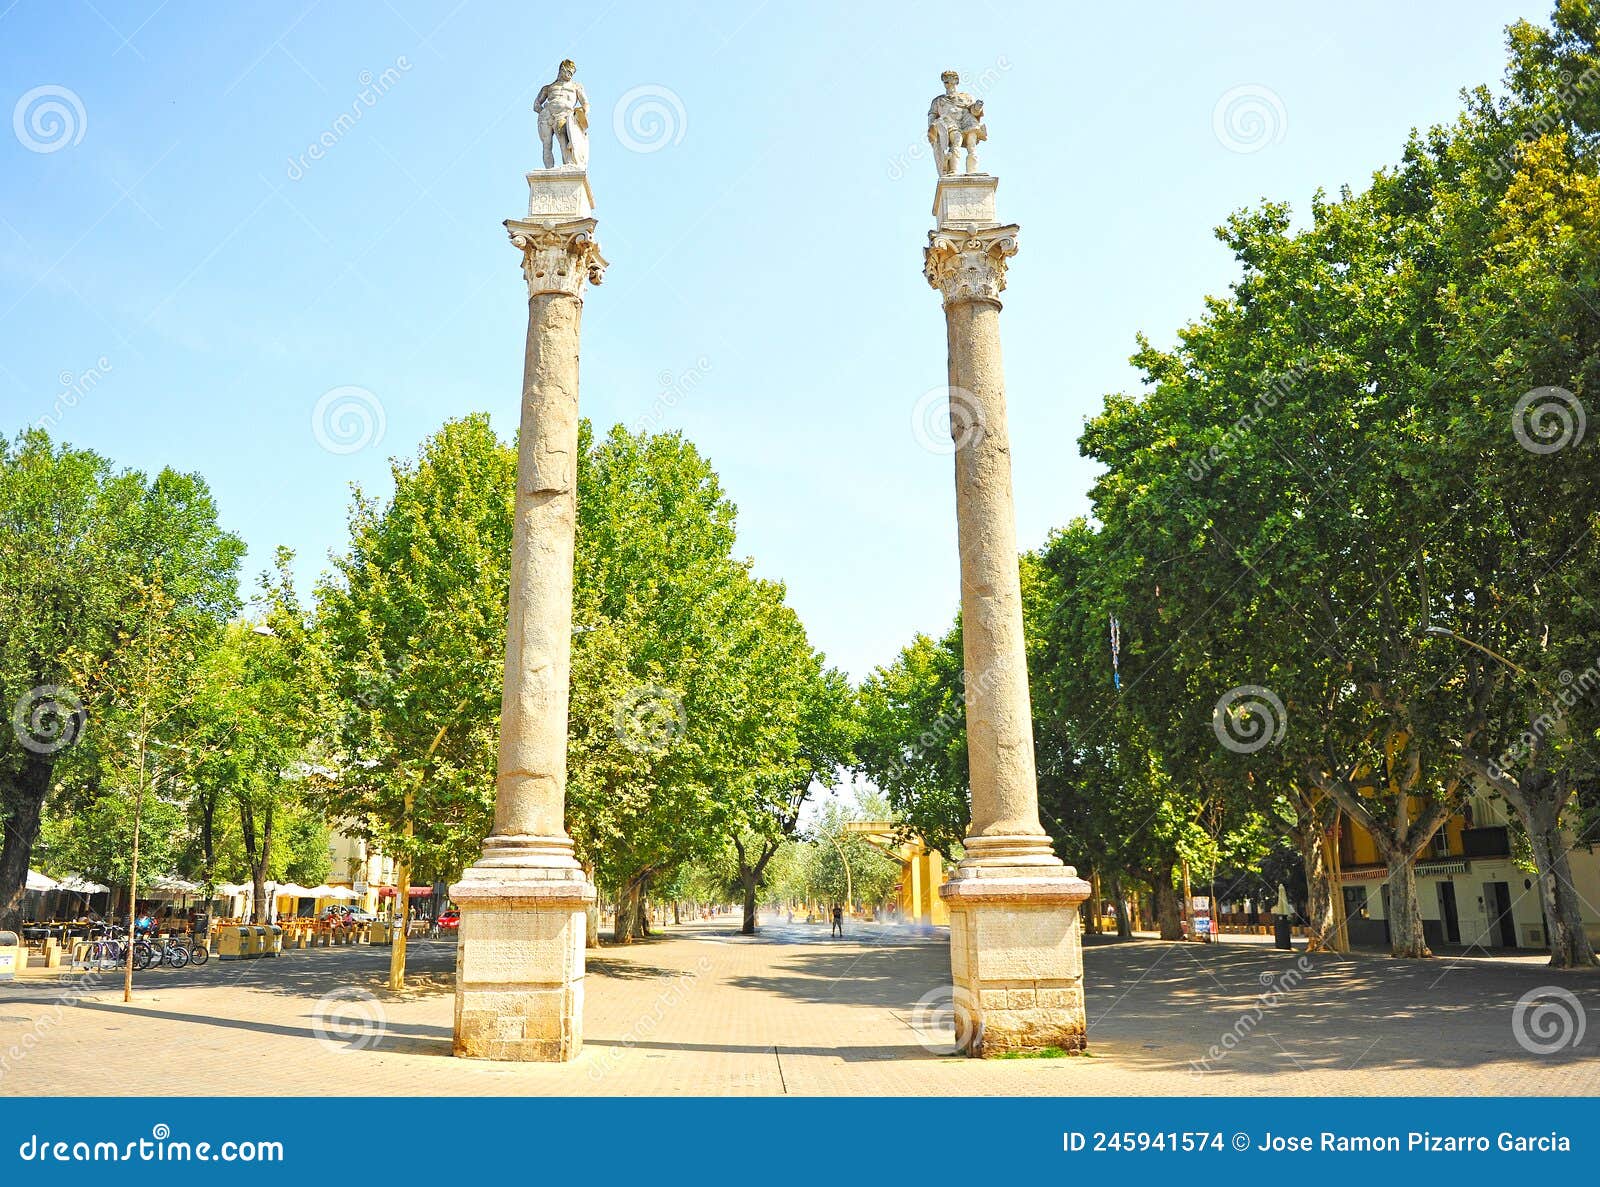 columnas de cesar y hercules en la alameda de hÃÂ©rcules en el centro de sevilla, espaÃÂ±a